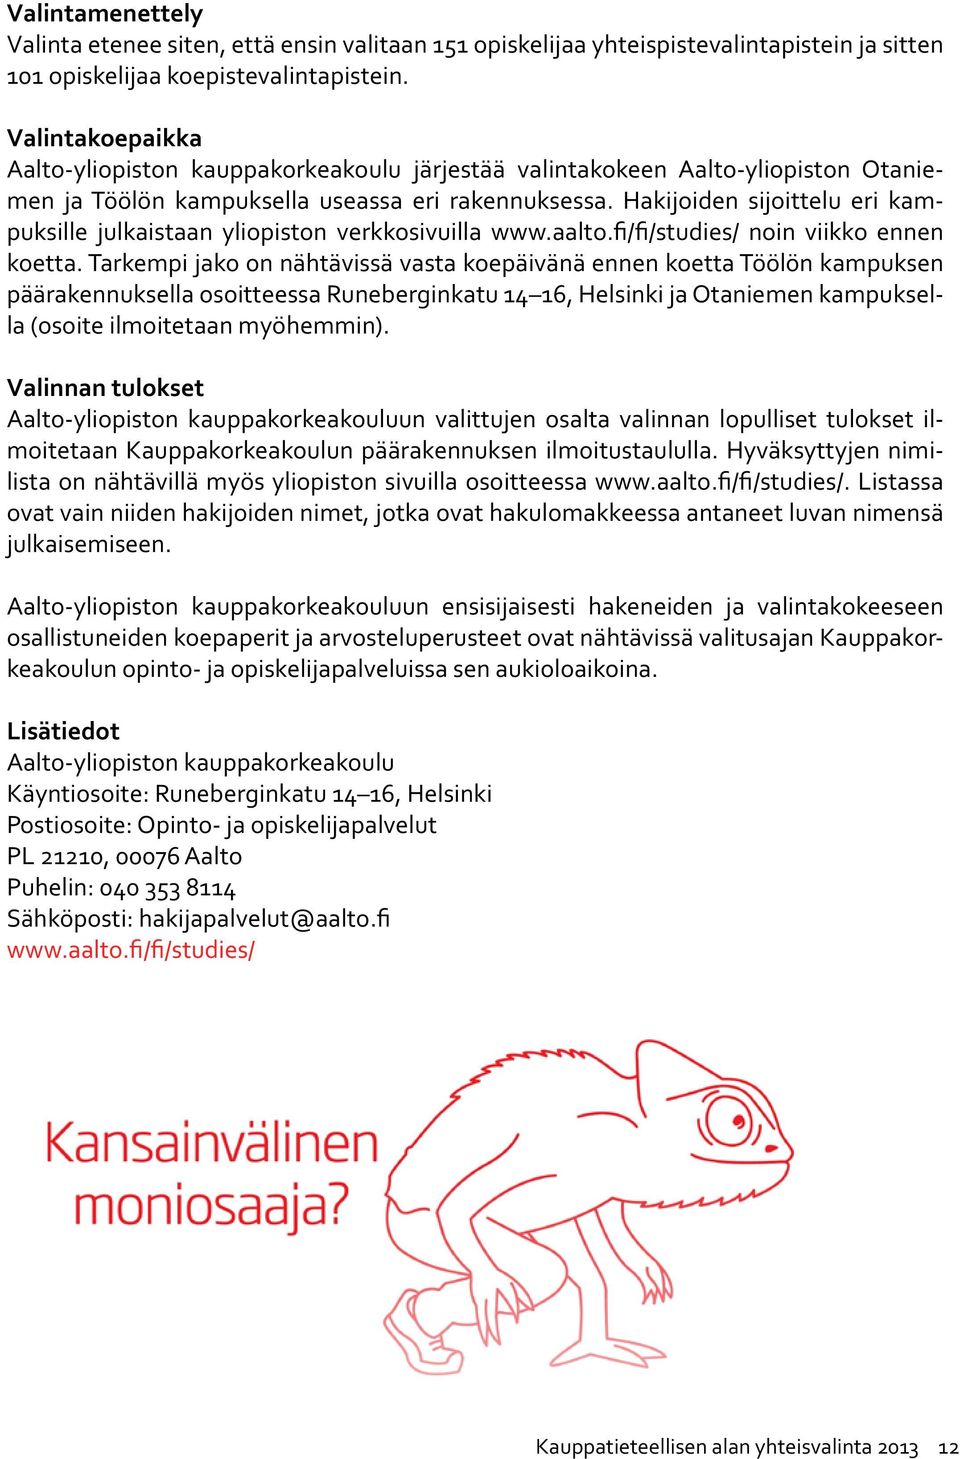 Hakijoiden sijoittelu eri kampuksille julkaistaan yliopiston verkkosivuilla www.aalto.fi/fi/studies/ noin viikko ennen koetta.